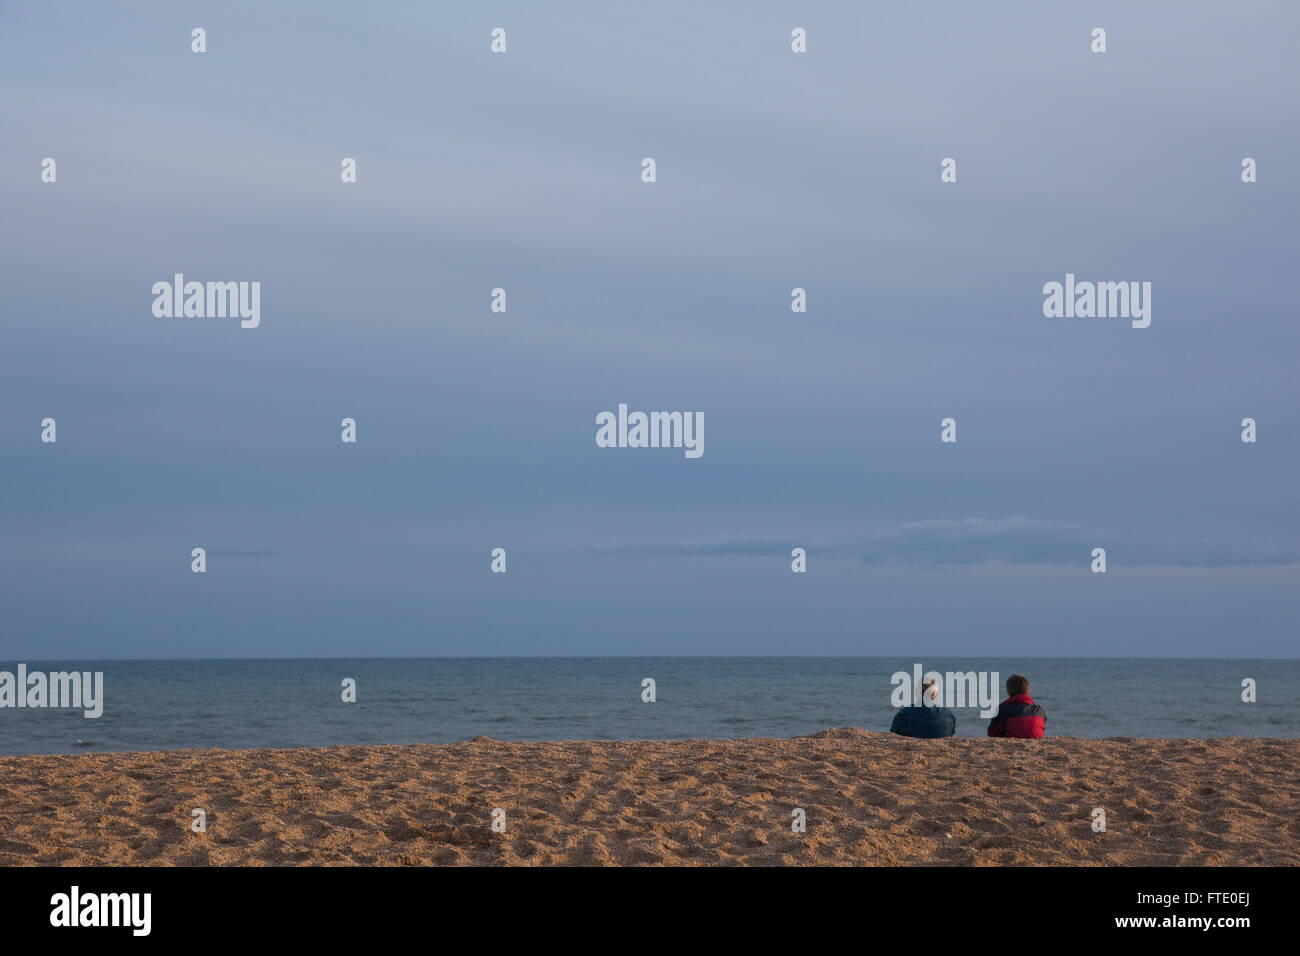 Ein paar wahrscheinlich im Ruhestand oder alten sitzen an einem Strand in der Dämmerung den Sonnenuntergang an der Küste, Ruhe und Kontemplation Leben in dieses friedliche ruhige Szene. Stockfoto